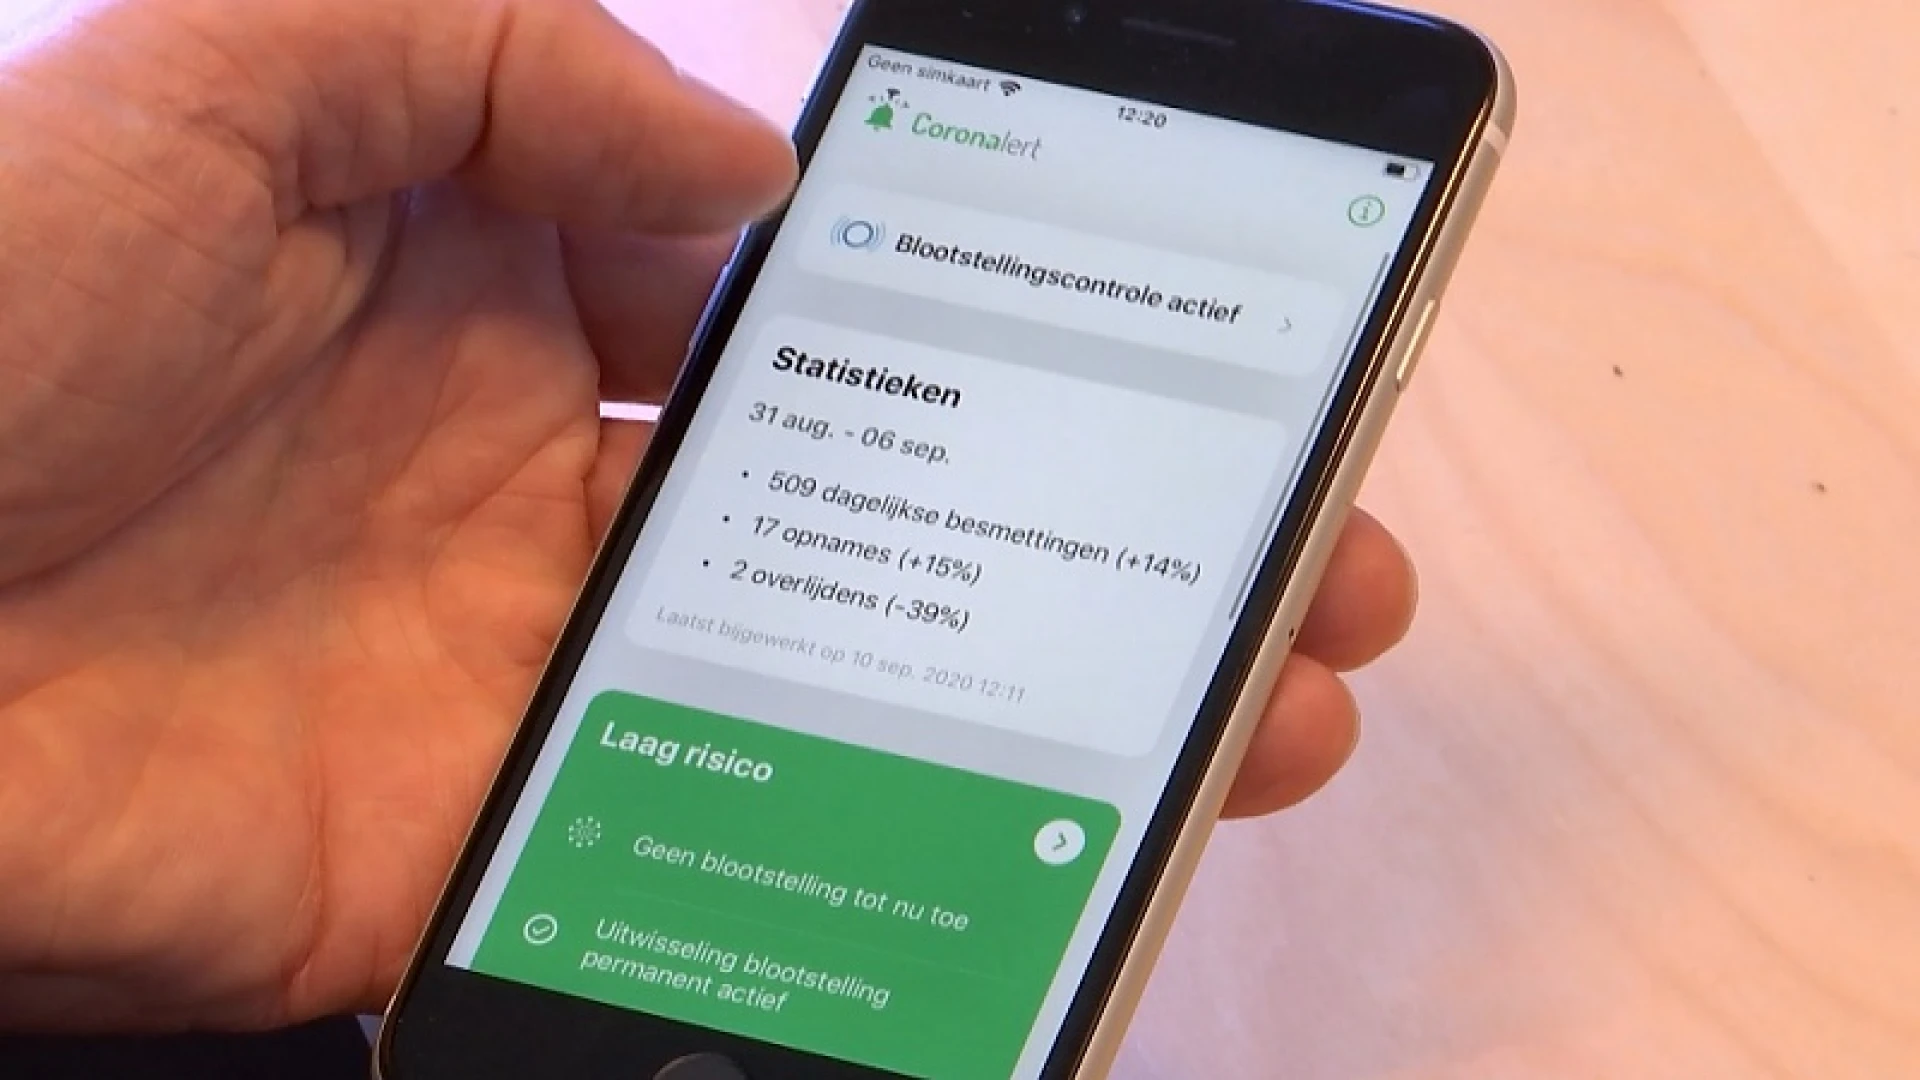 KU Leuven gaat contacttracing app testen met 10 000 proefpersonen